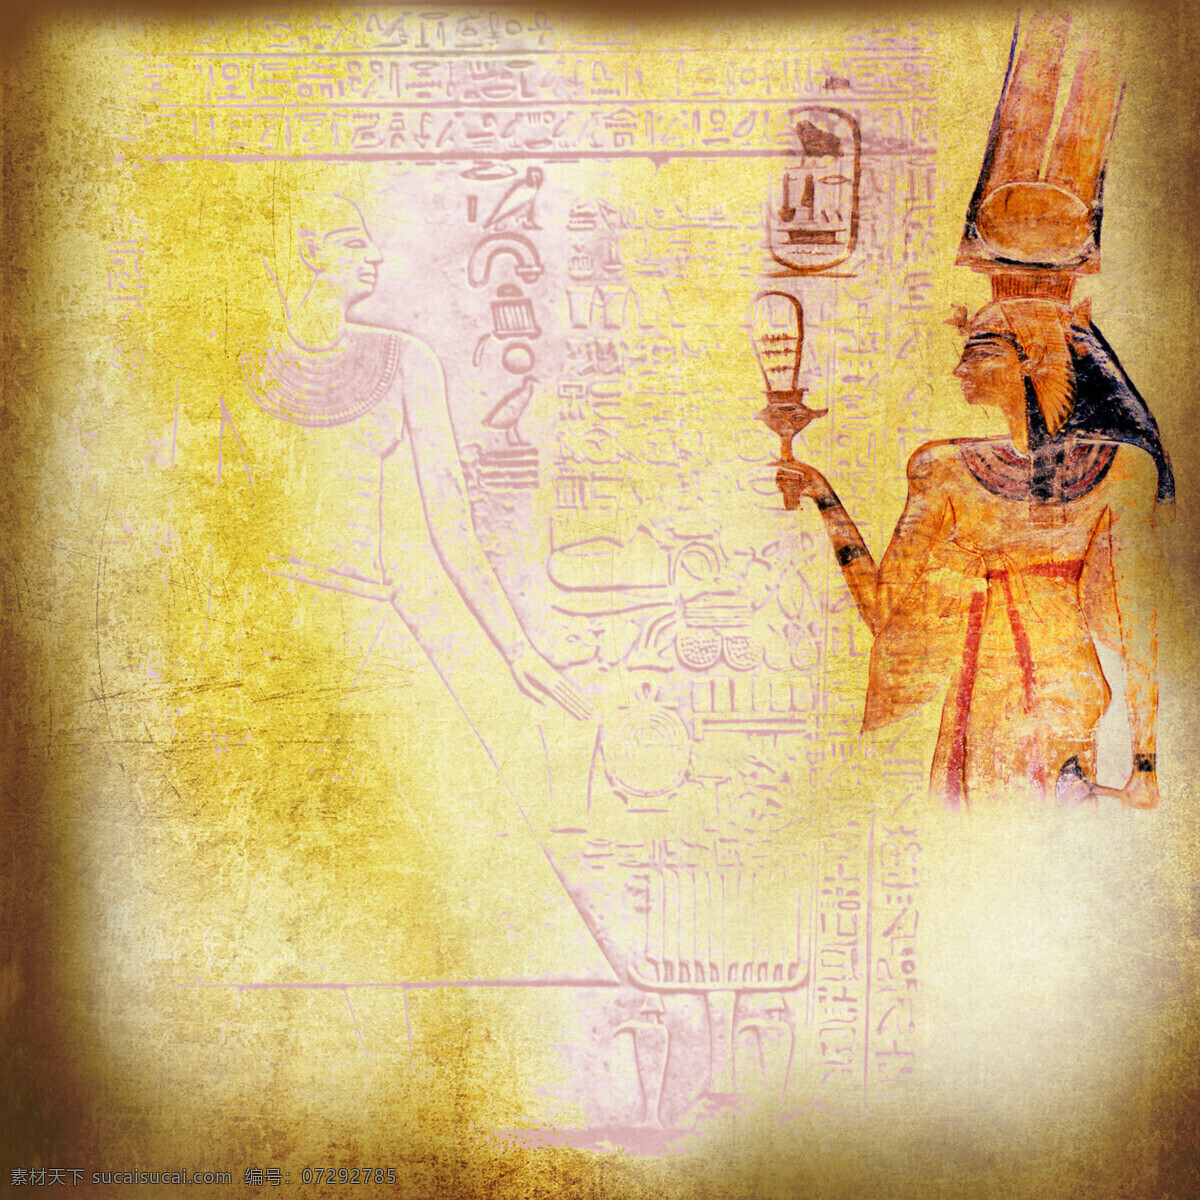 埃及 图案 背景 埃及女性 怀旧背景 埃及女人 埃及传统图案 埃及壁画 古埃及文化 传统图案 文化艺术